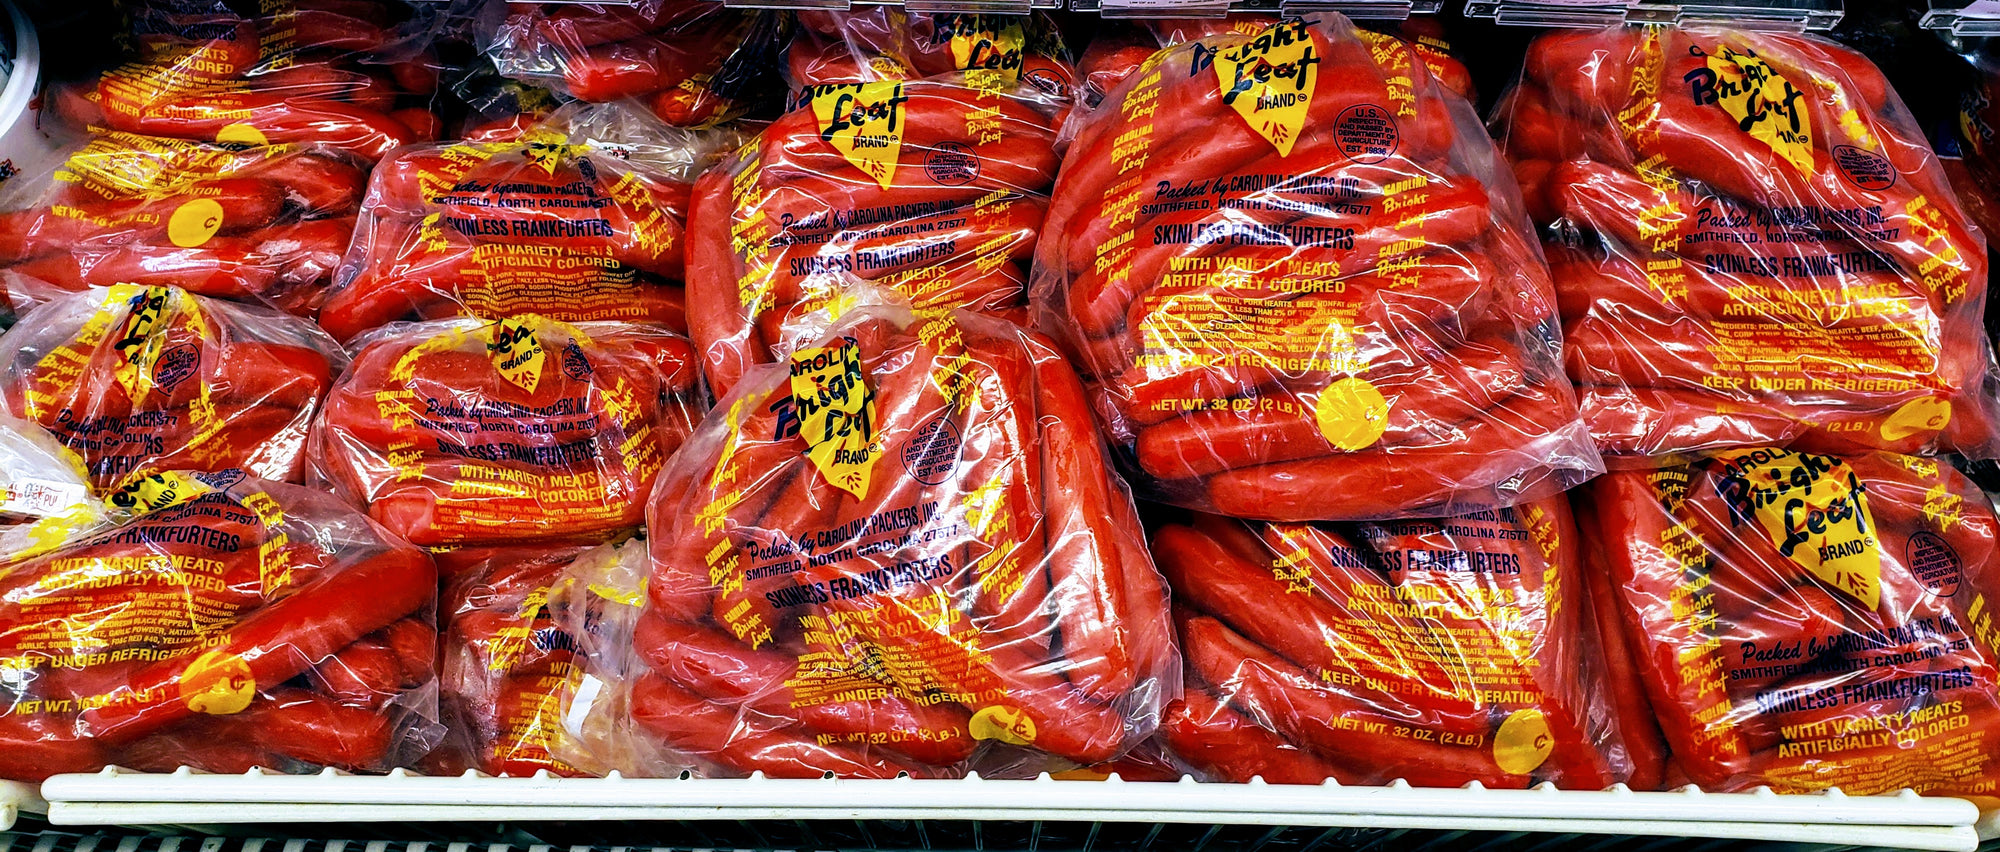 The Original Bright Leaf Hot Dogs in a Bag